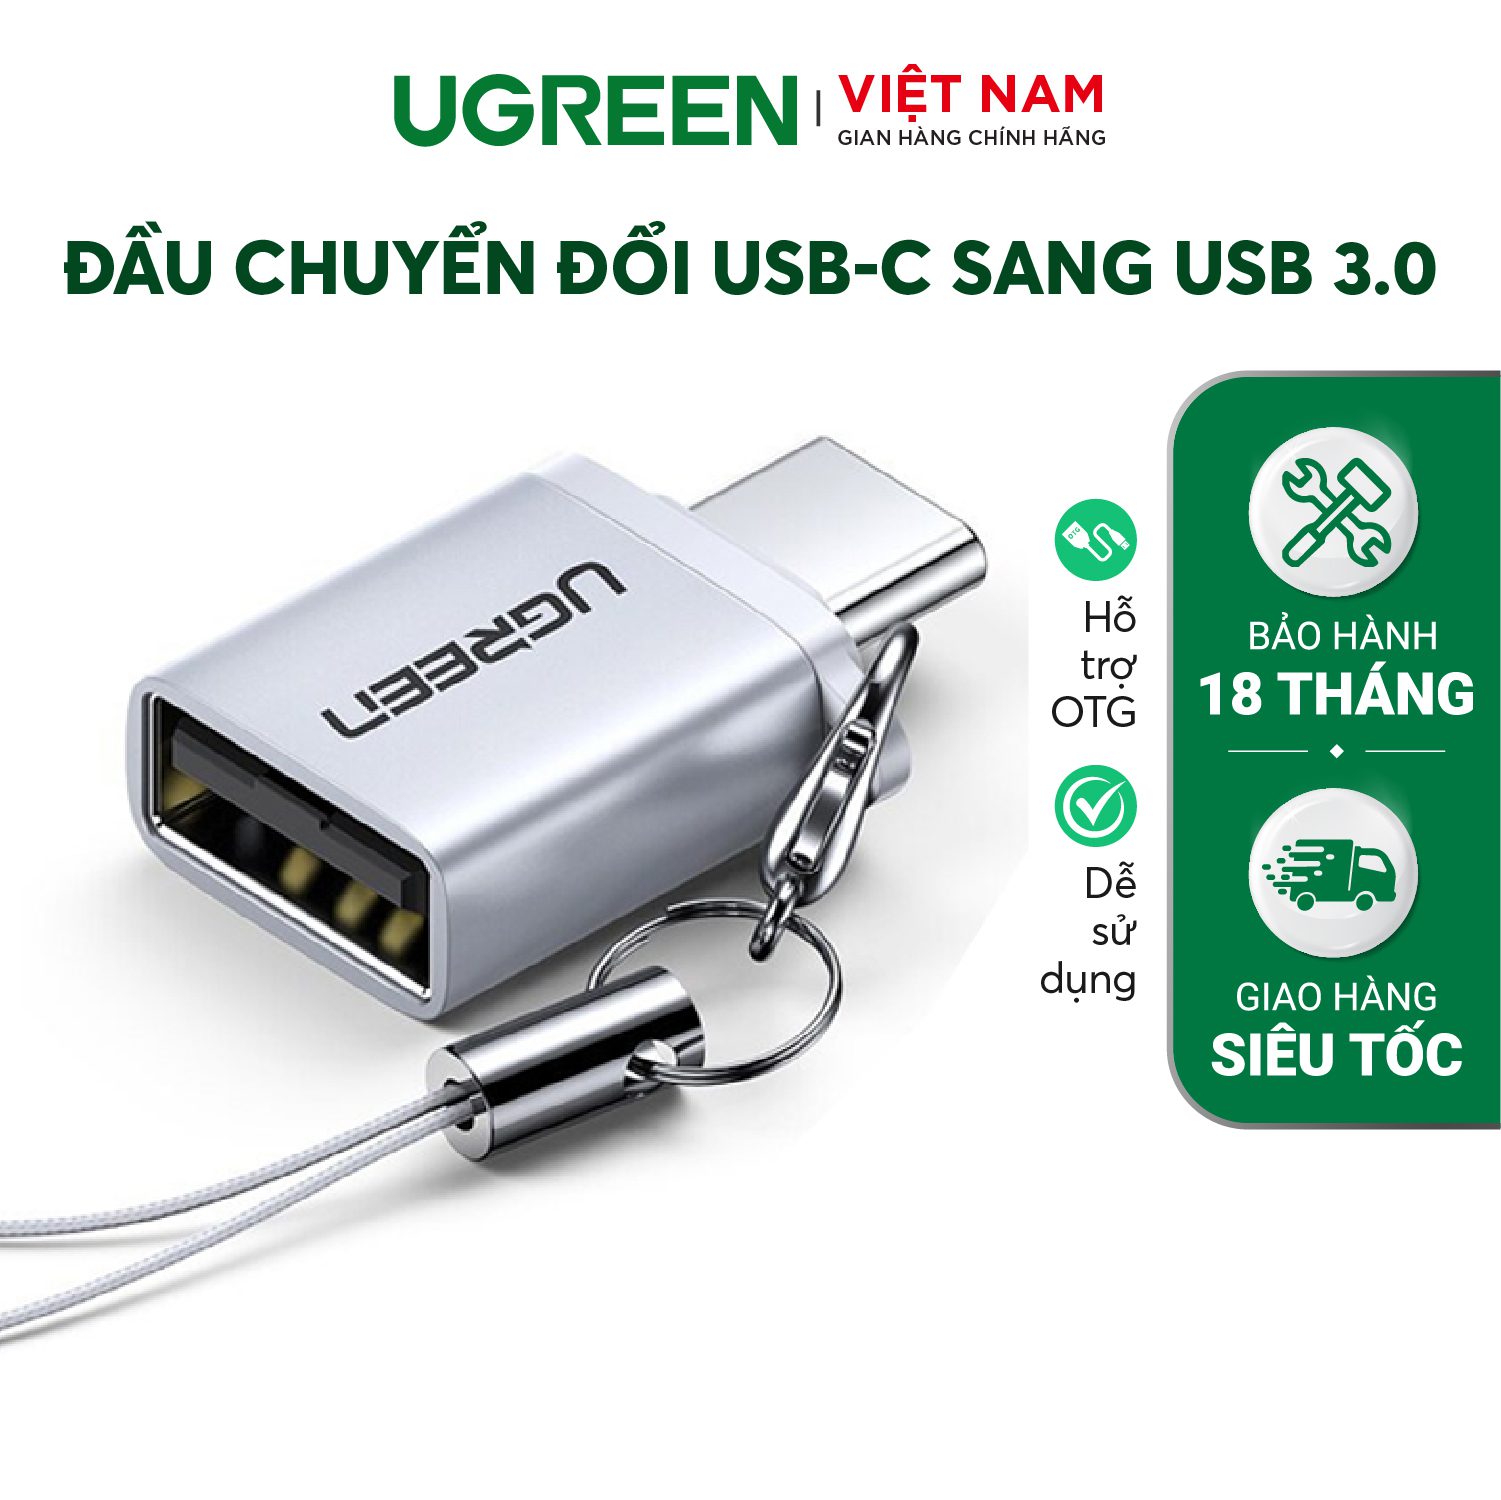 Đầu chuyển đổi Type C sang USB 3.0 UGREEN US270 Hỗ trợ OTG, tương thích với Chromebook Macbook Huawei P9 /P10/P20/Mate 9/Mate 10 Samsung S8 Xiaomi 4C Nexus 5X 6P LG G5... – Ugreen Việt Nam